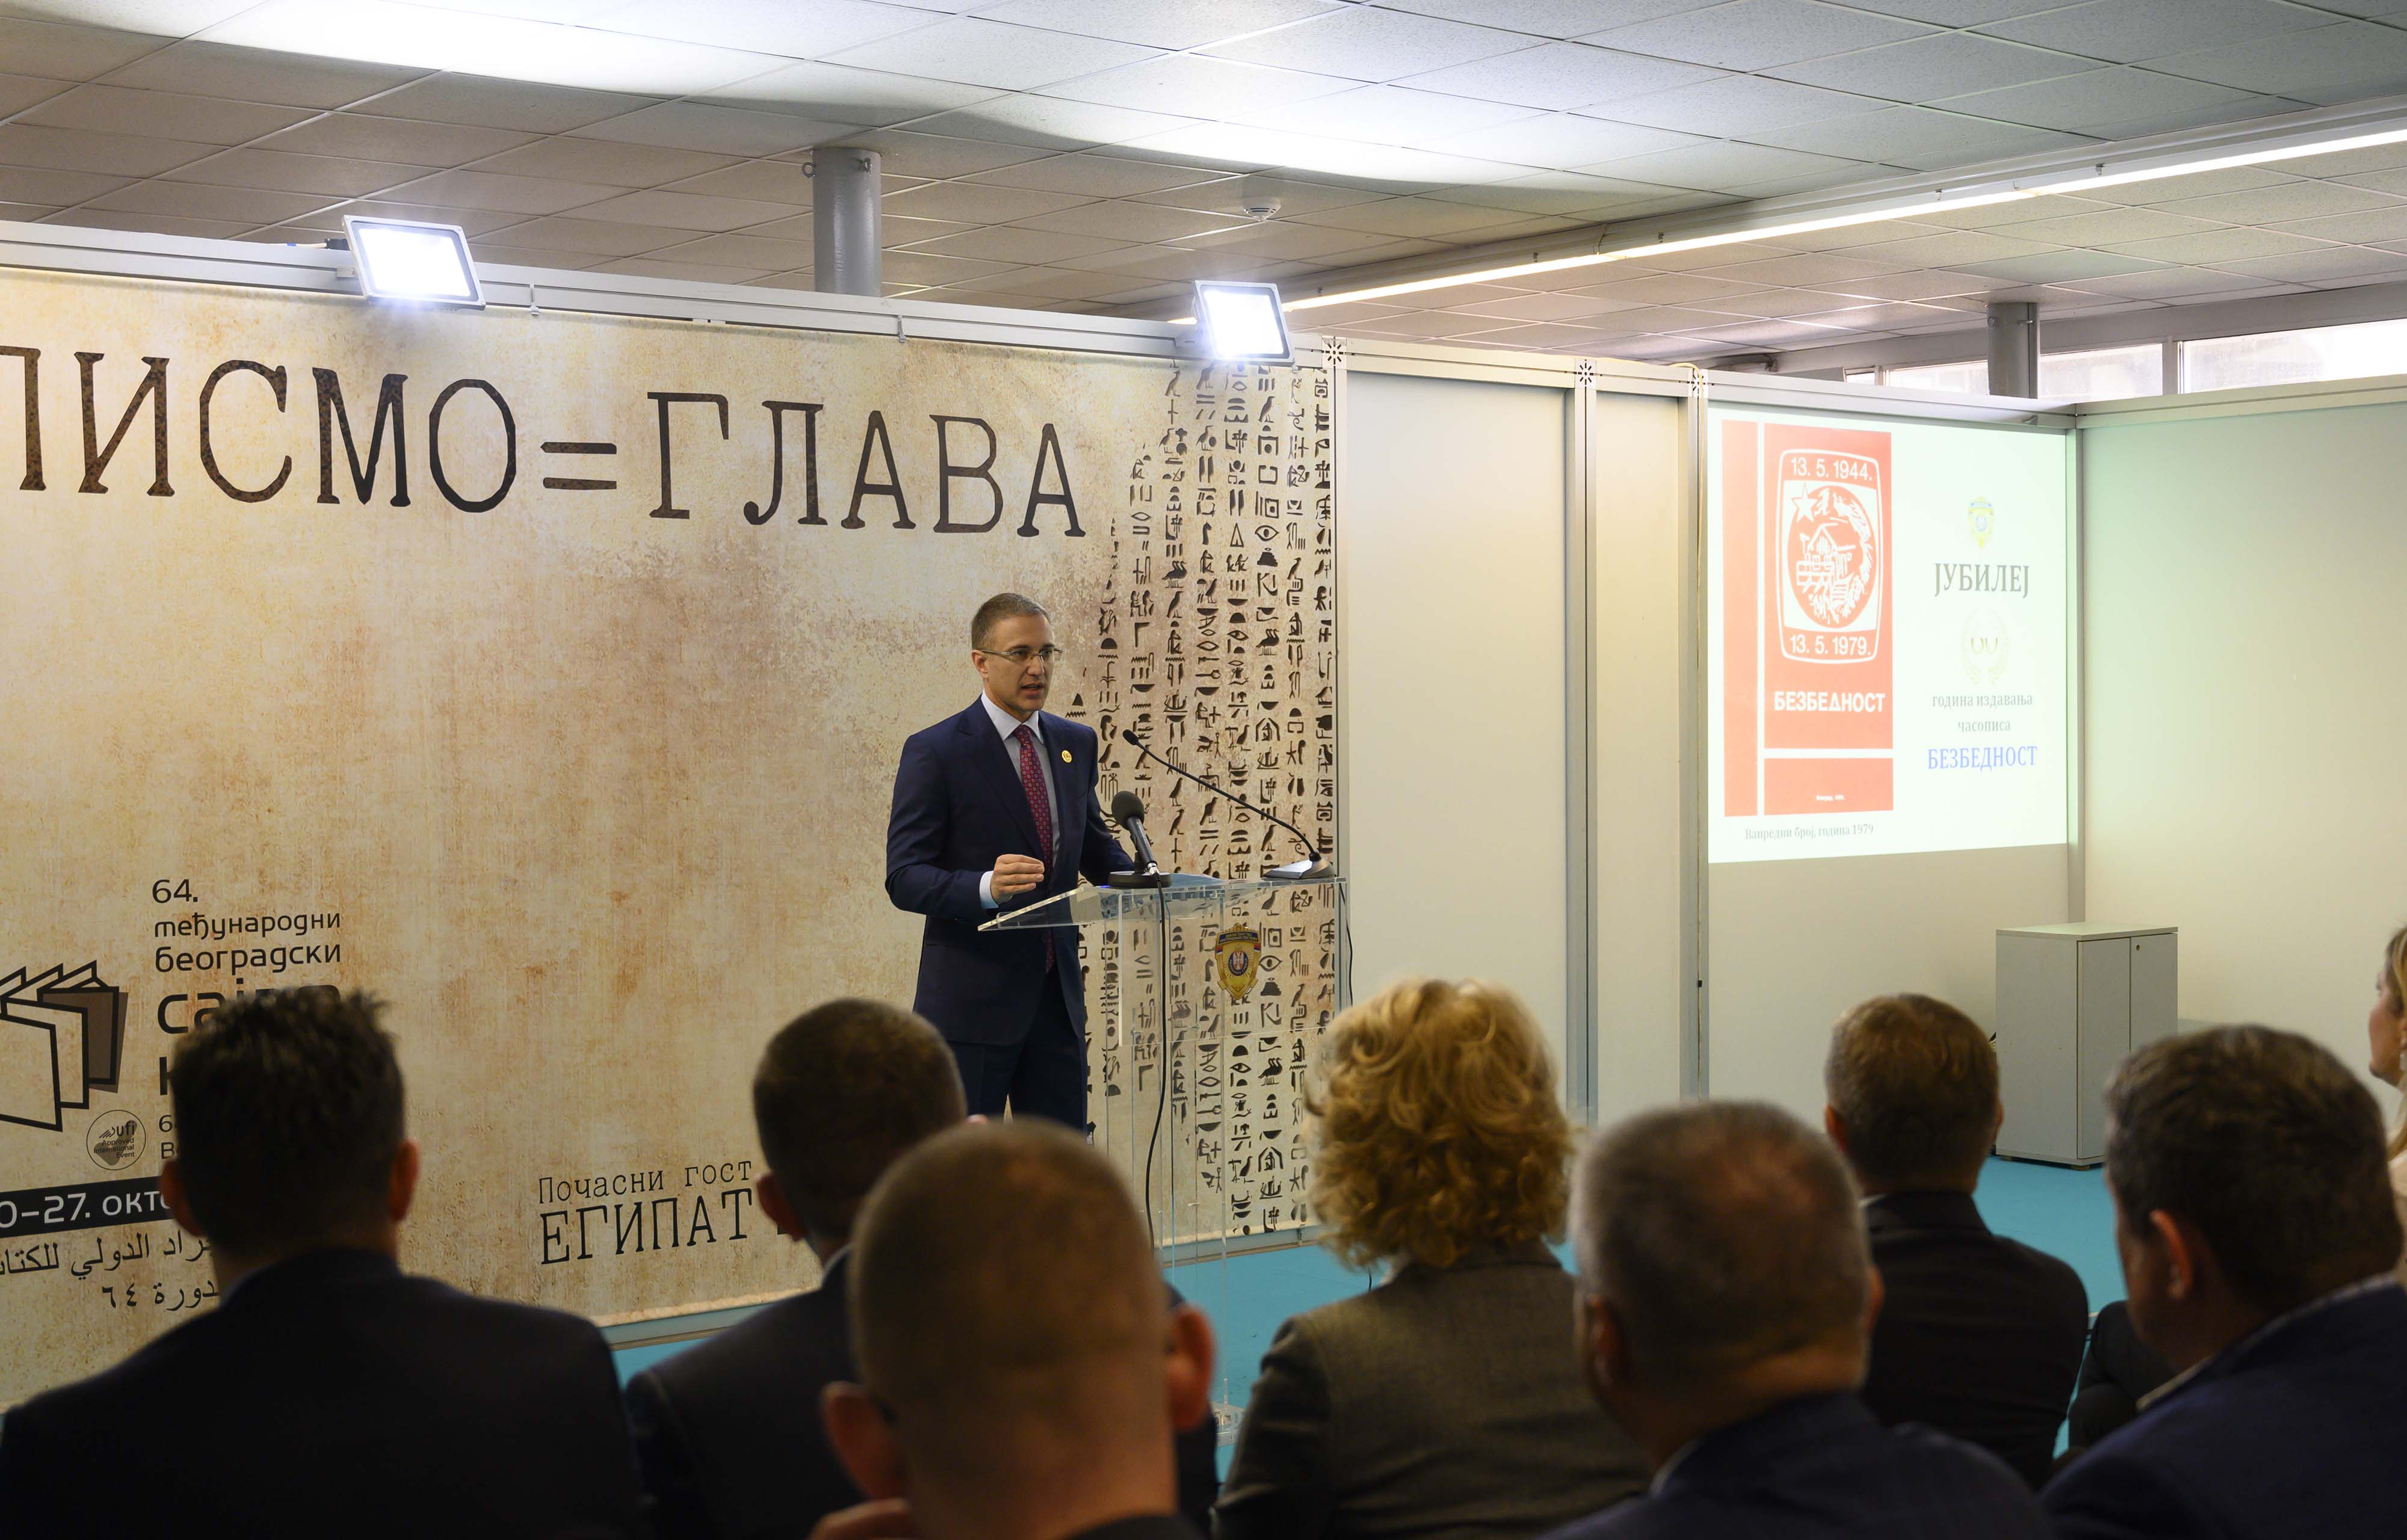 Ministar Stefanović se zahvalio svima koji učestvuju u kreiranju časopisa „Bezbednost“